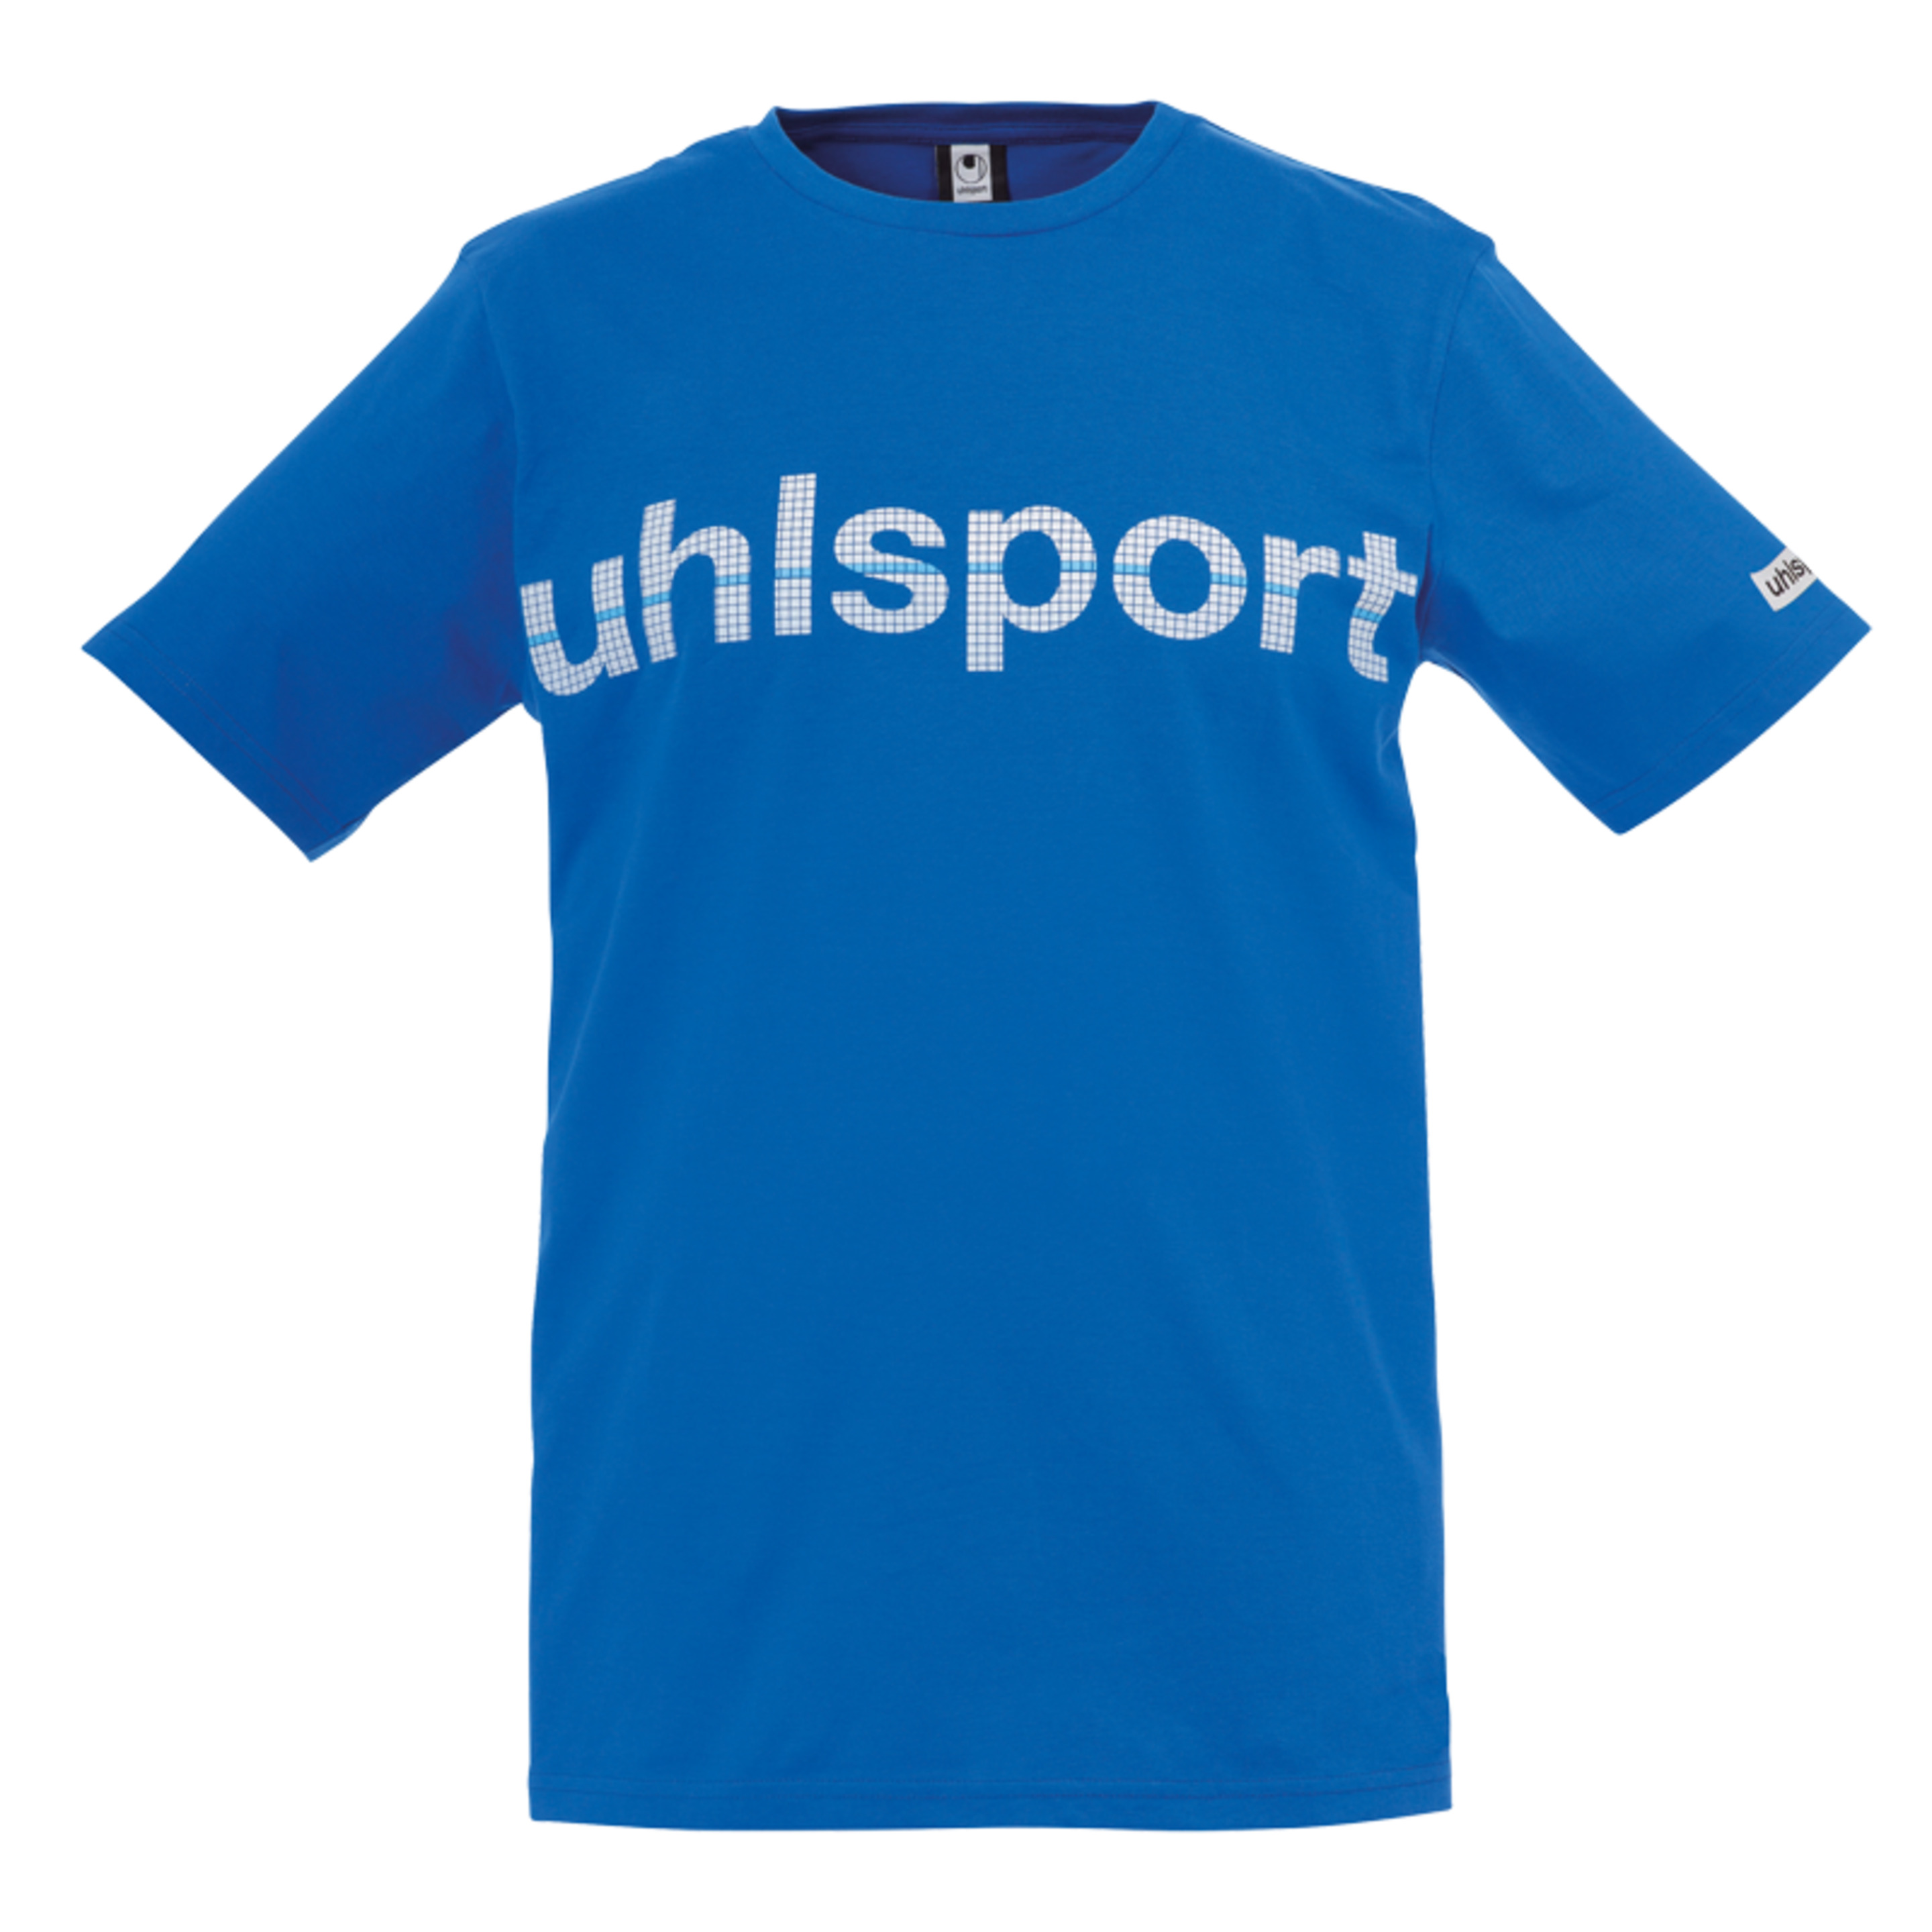 Essential Promo Camiseta Azur Uhlsport - azul - 